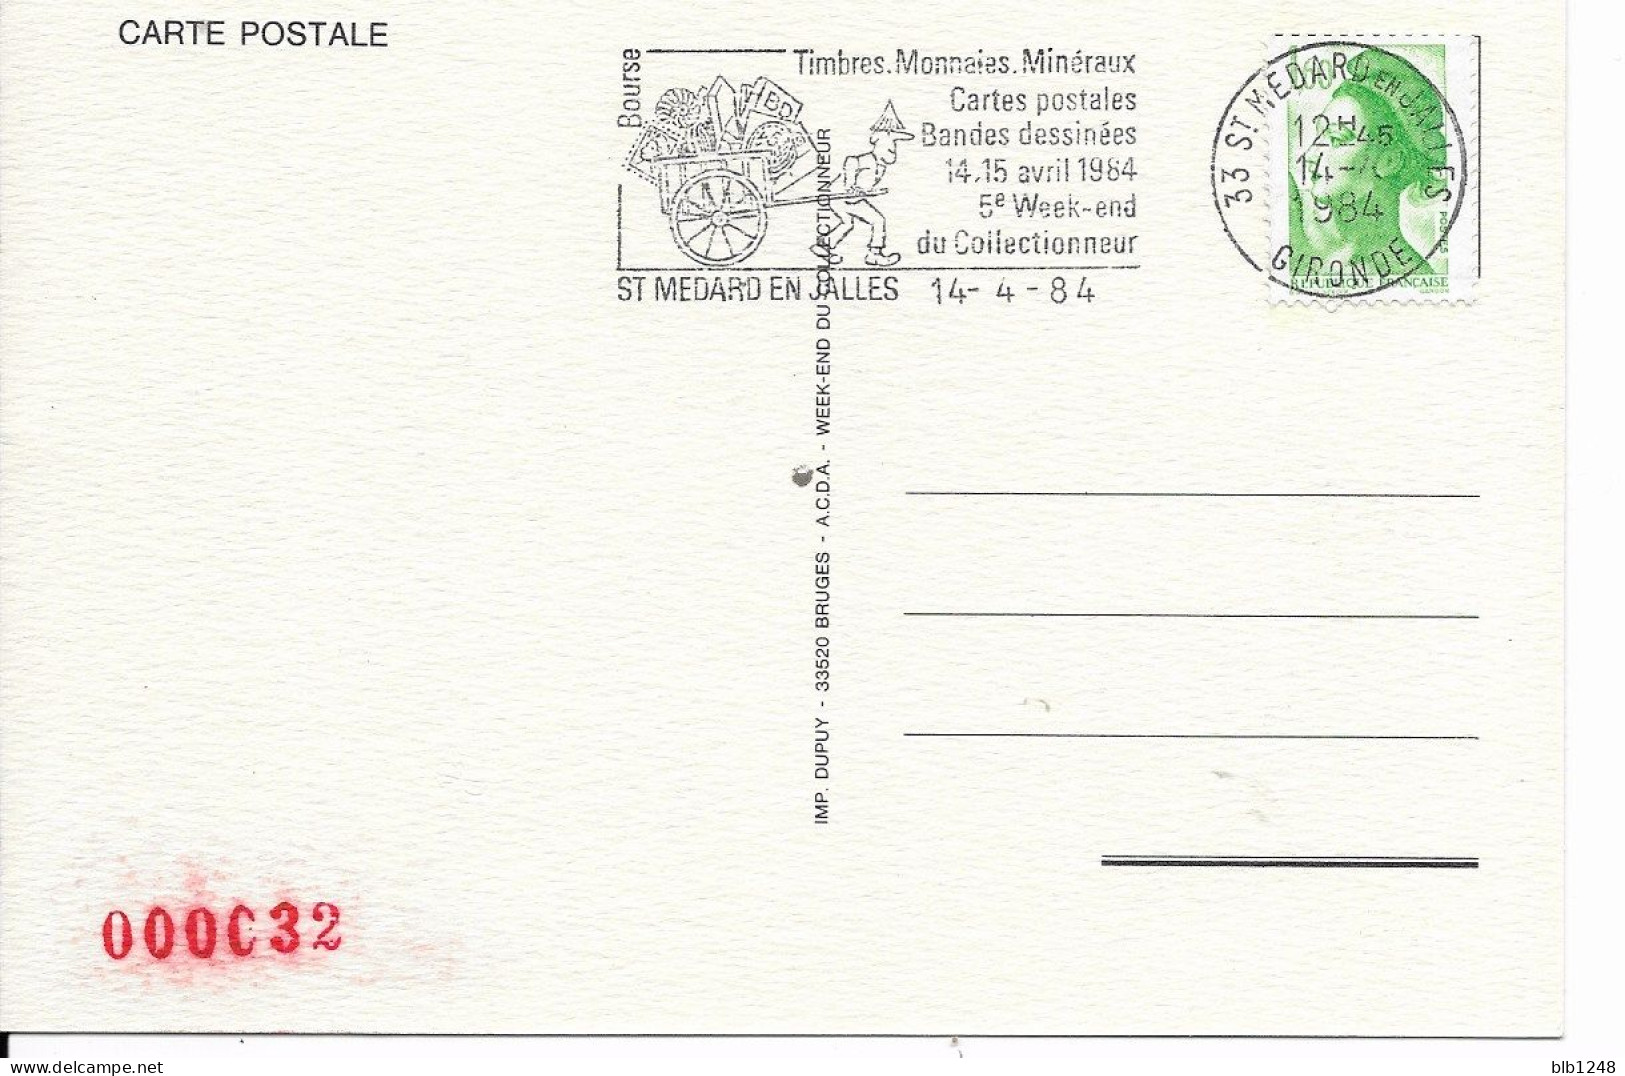 Bourses & Salons De Collections  Saint Medard En Jalles 5eme Week End Du Collectionneur 1984 - Collector Fairs & Bourses